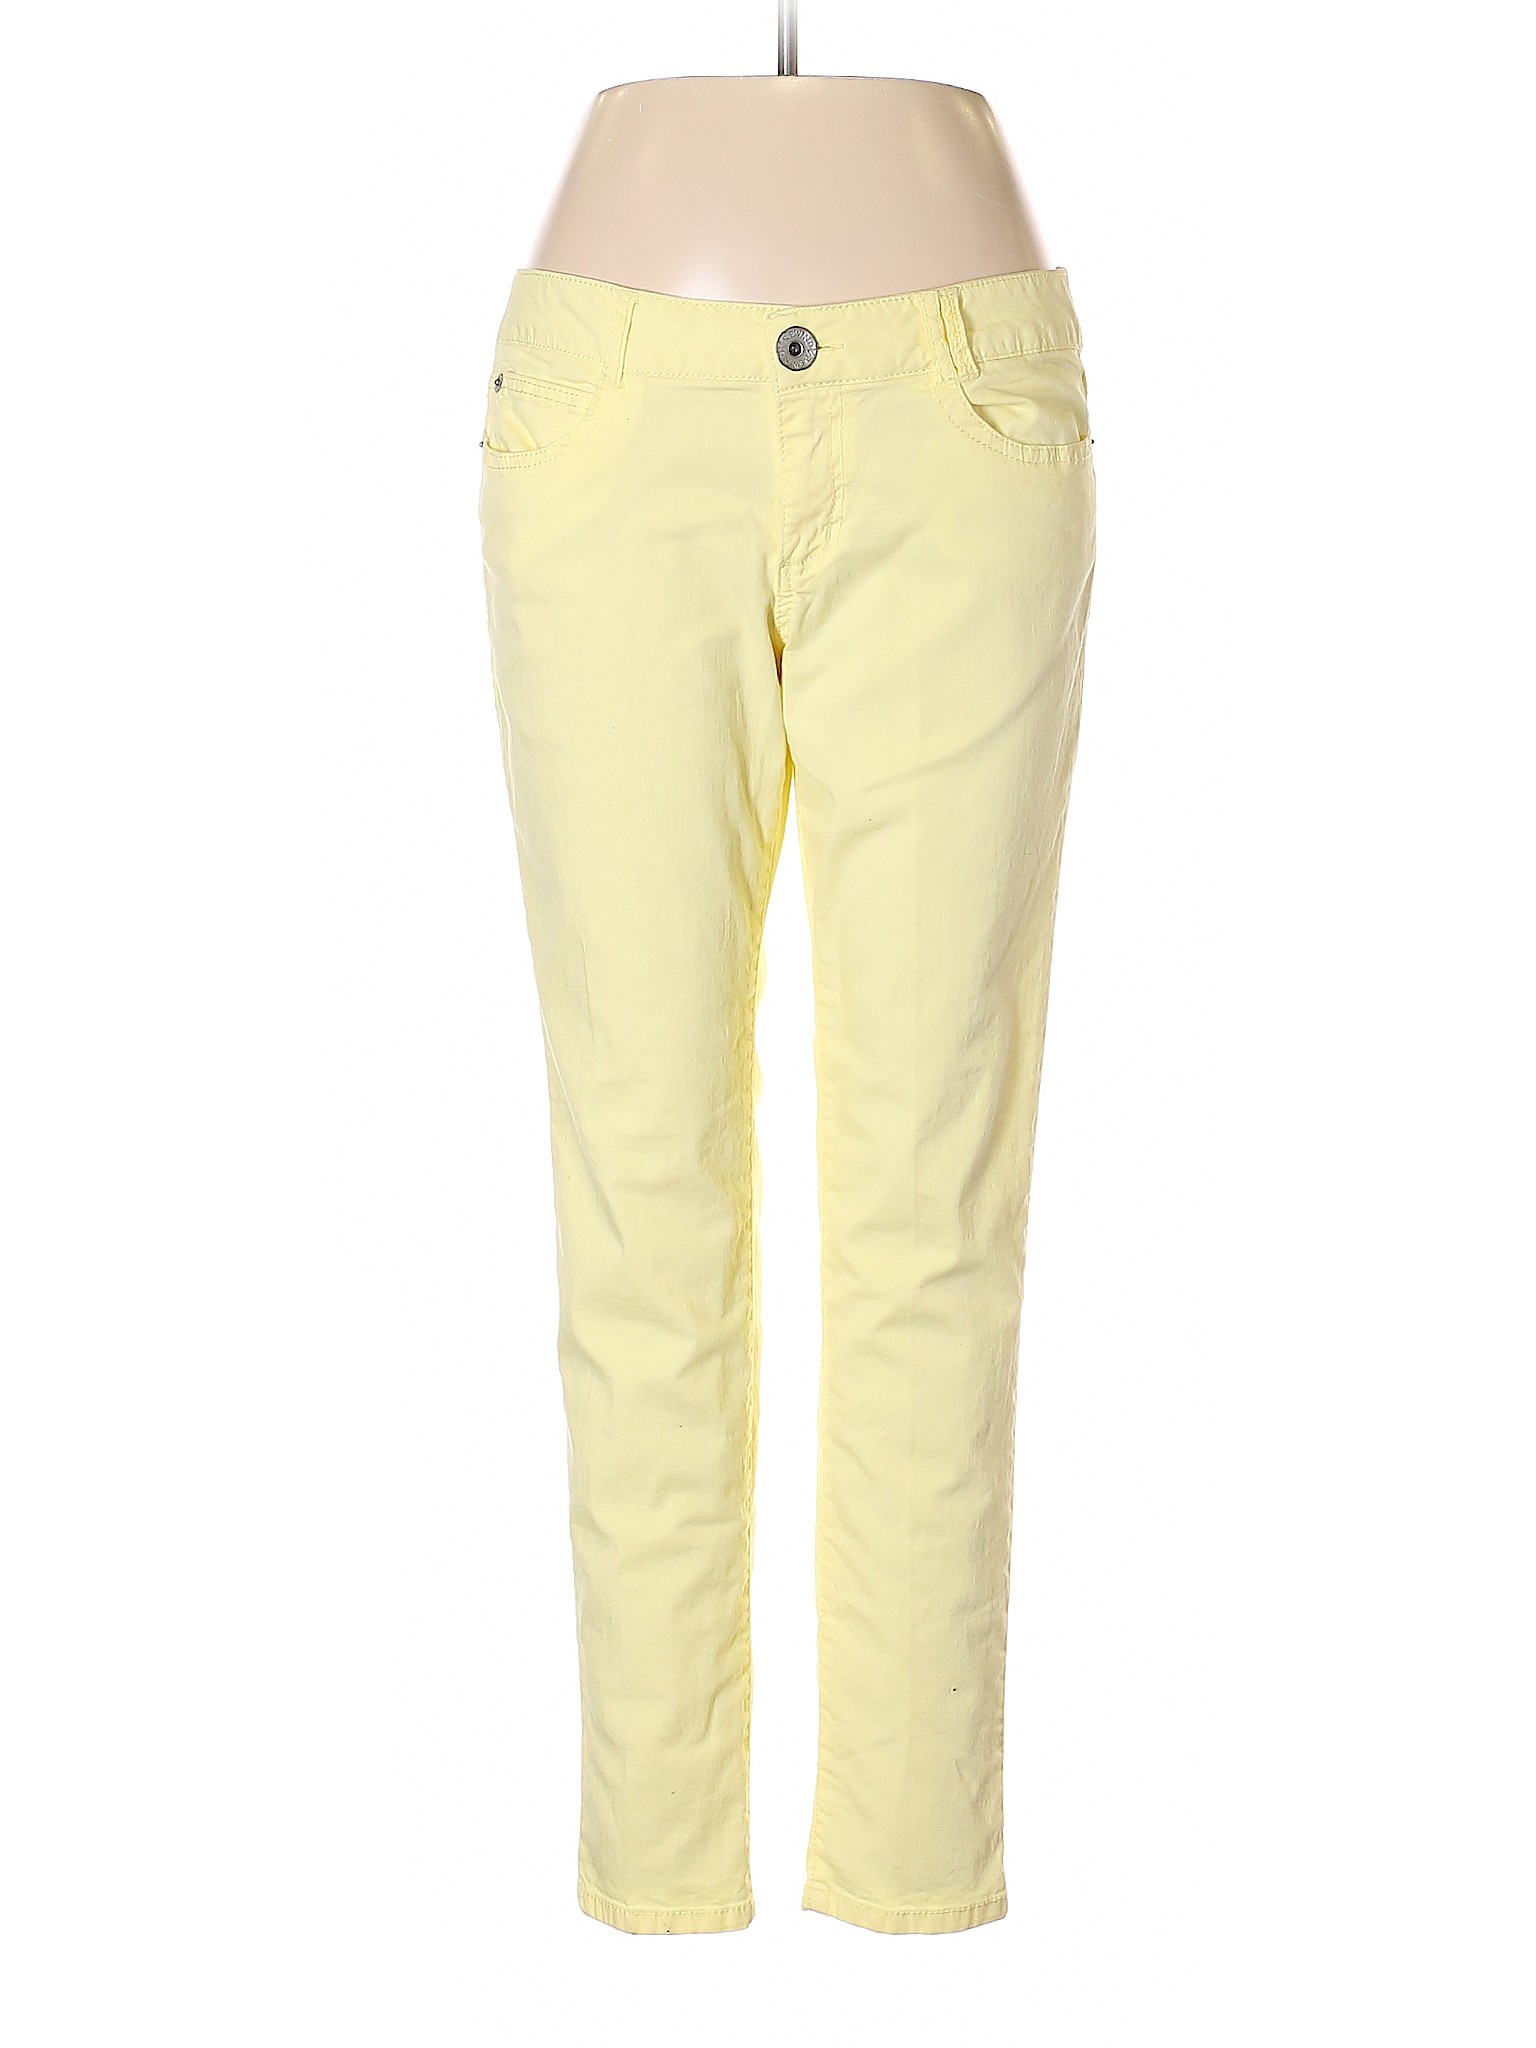 Rewind Women Yellow Jeans 17 | eBay